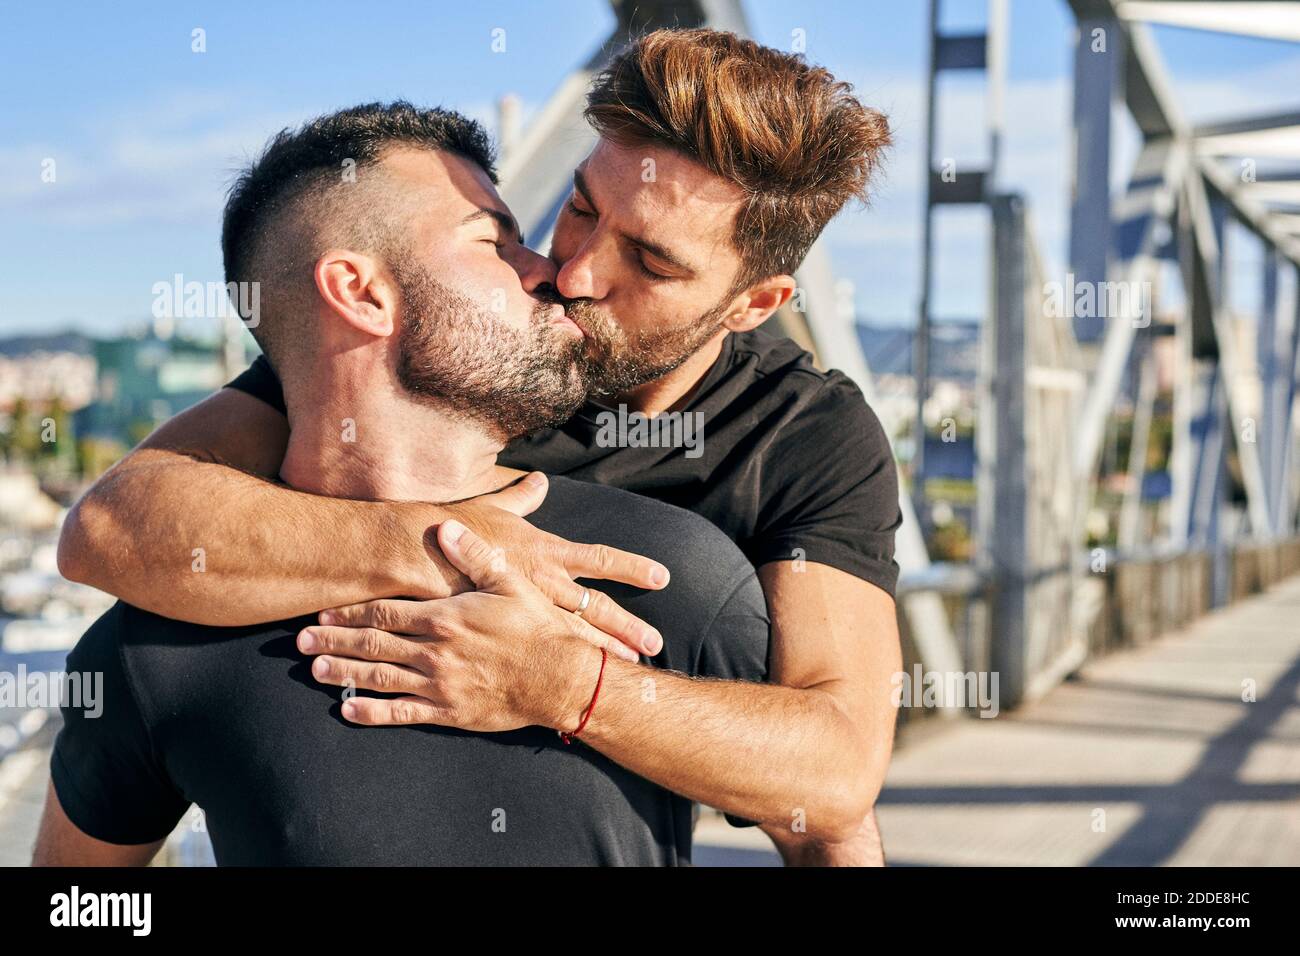 Uomo gay immagini e fotografie stock ad alta risoluzione - Alamy